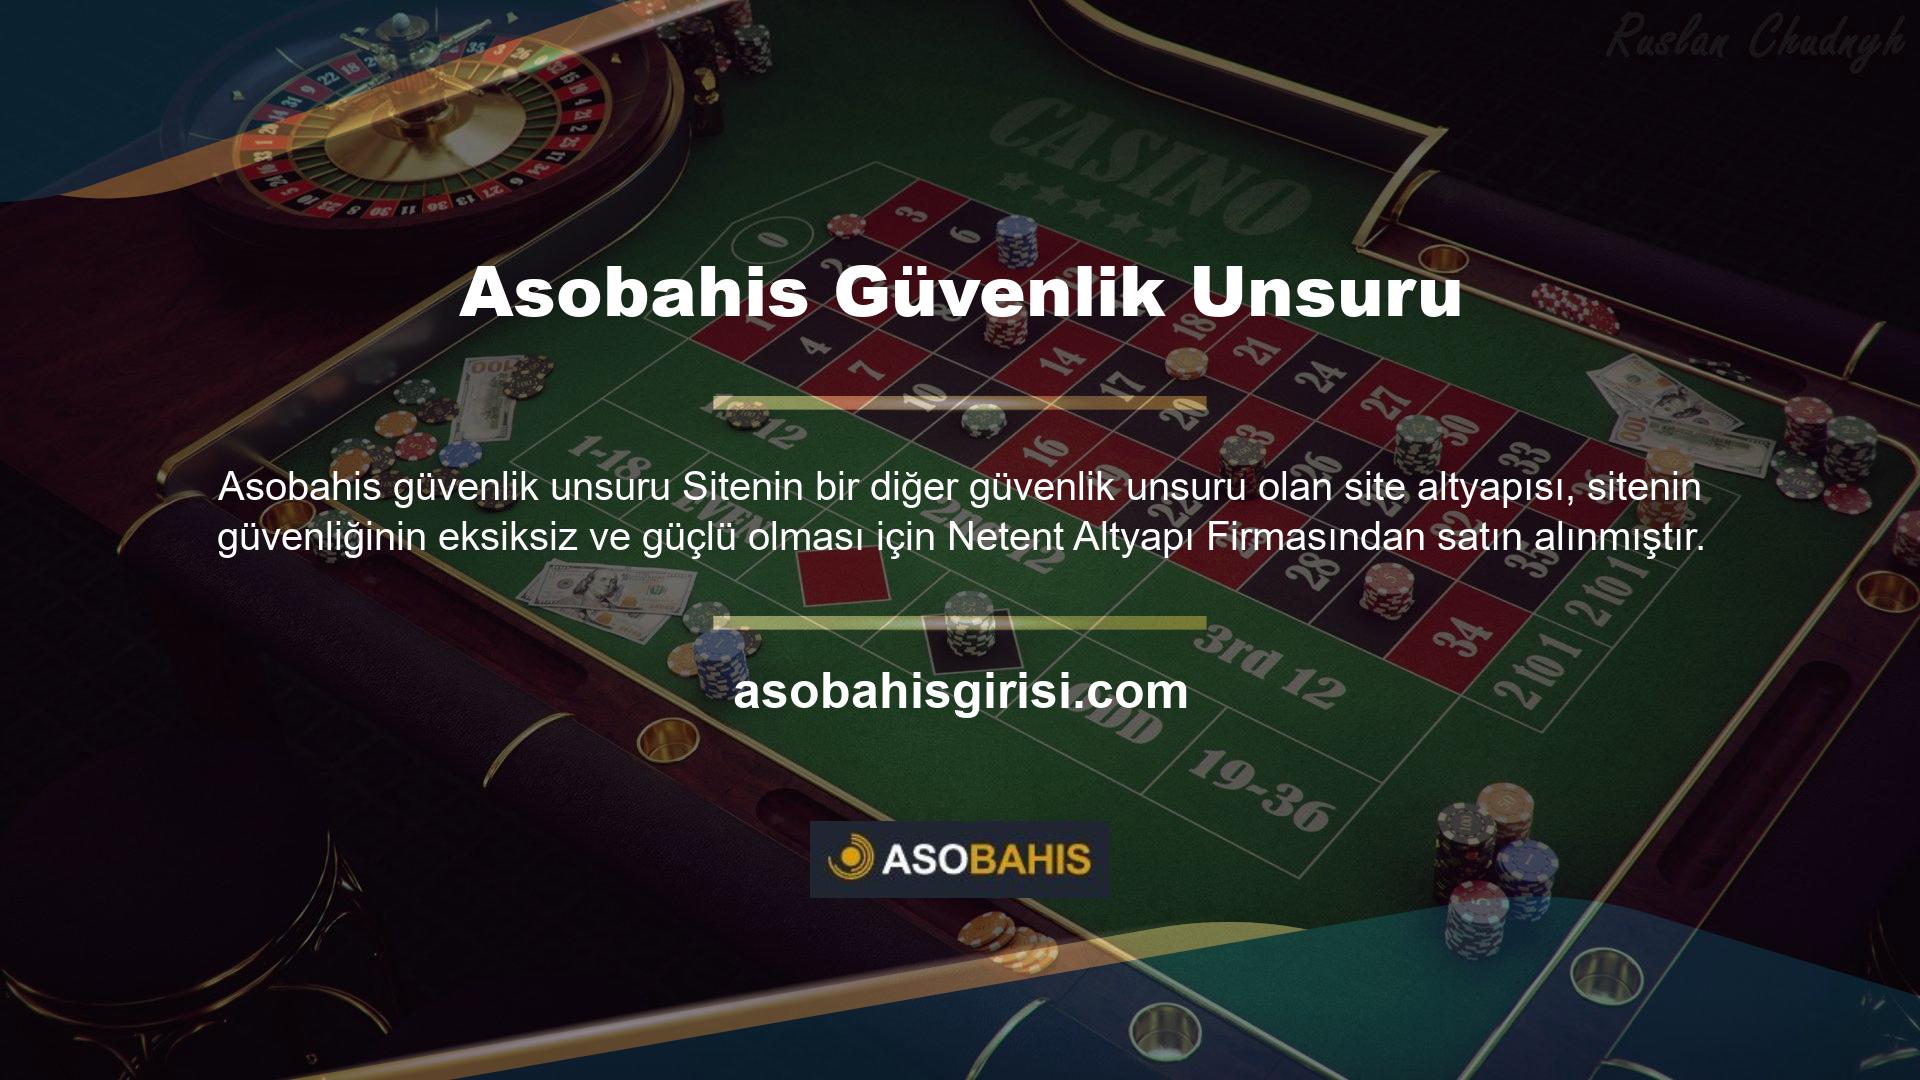 Sitenin birçok bölümünden biri olan Asobahis spor bahisleri bölümü, kurulduğu günden bu yana sitede yer almakta ve Türk casino tutkunlarının ilgisini çeken bir bölümdür